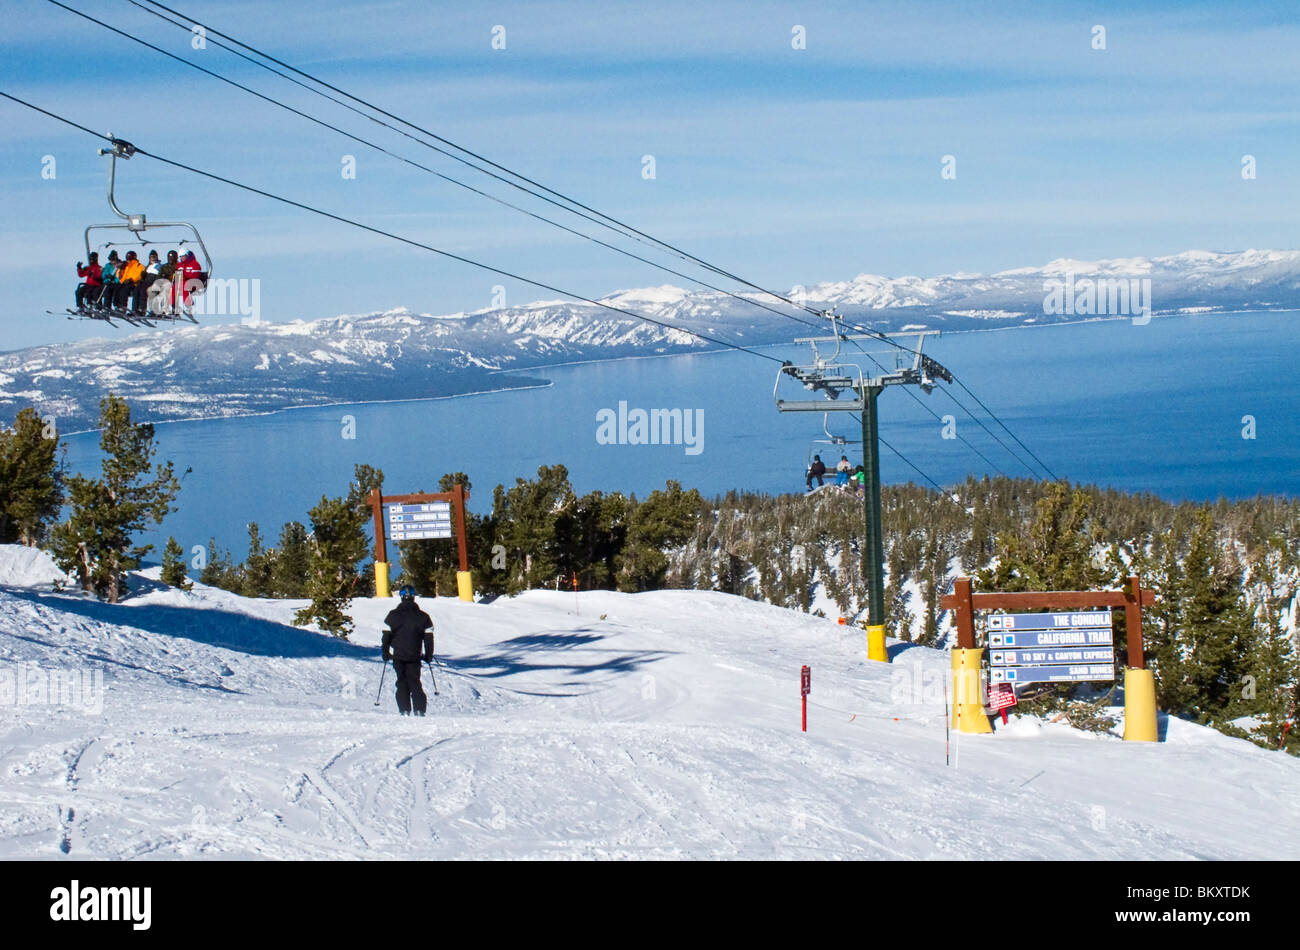 Skifahrer am Skilift von halbem Weg bis die Heavenly Mountain Resort Ski-Pisten im Winter. Lake Tahoe ist im Hintergrund. Stockfoto